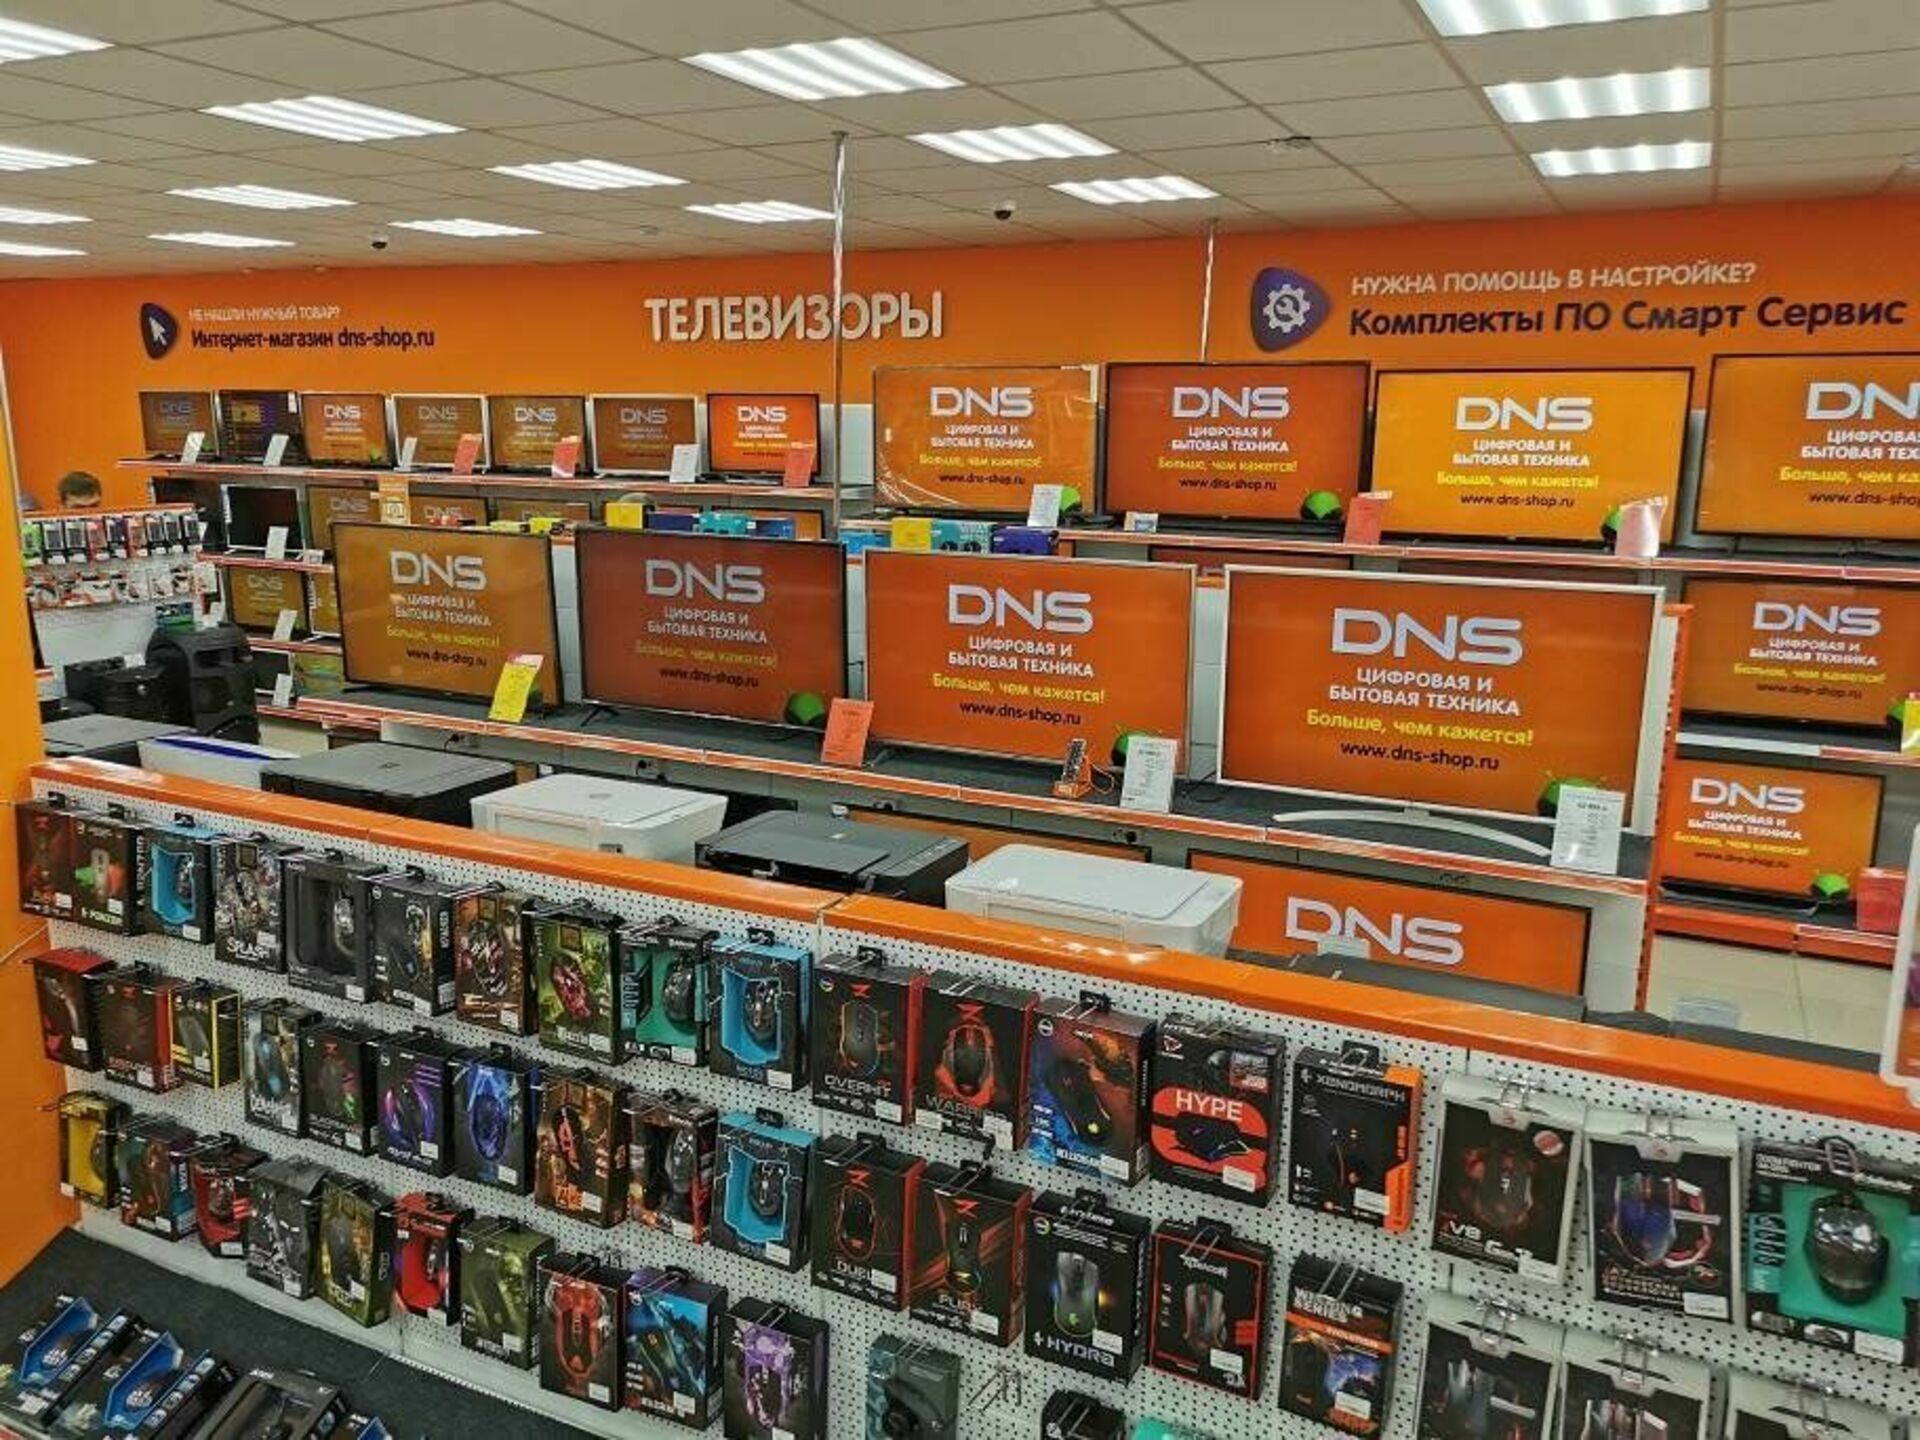 Купить через днс. ДНС-0107. DSN магазин электроники. ДНС интернет магазин. Магазин DNS цифровая и бытовая техника интернет.